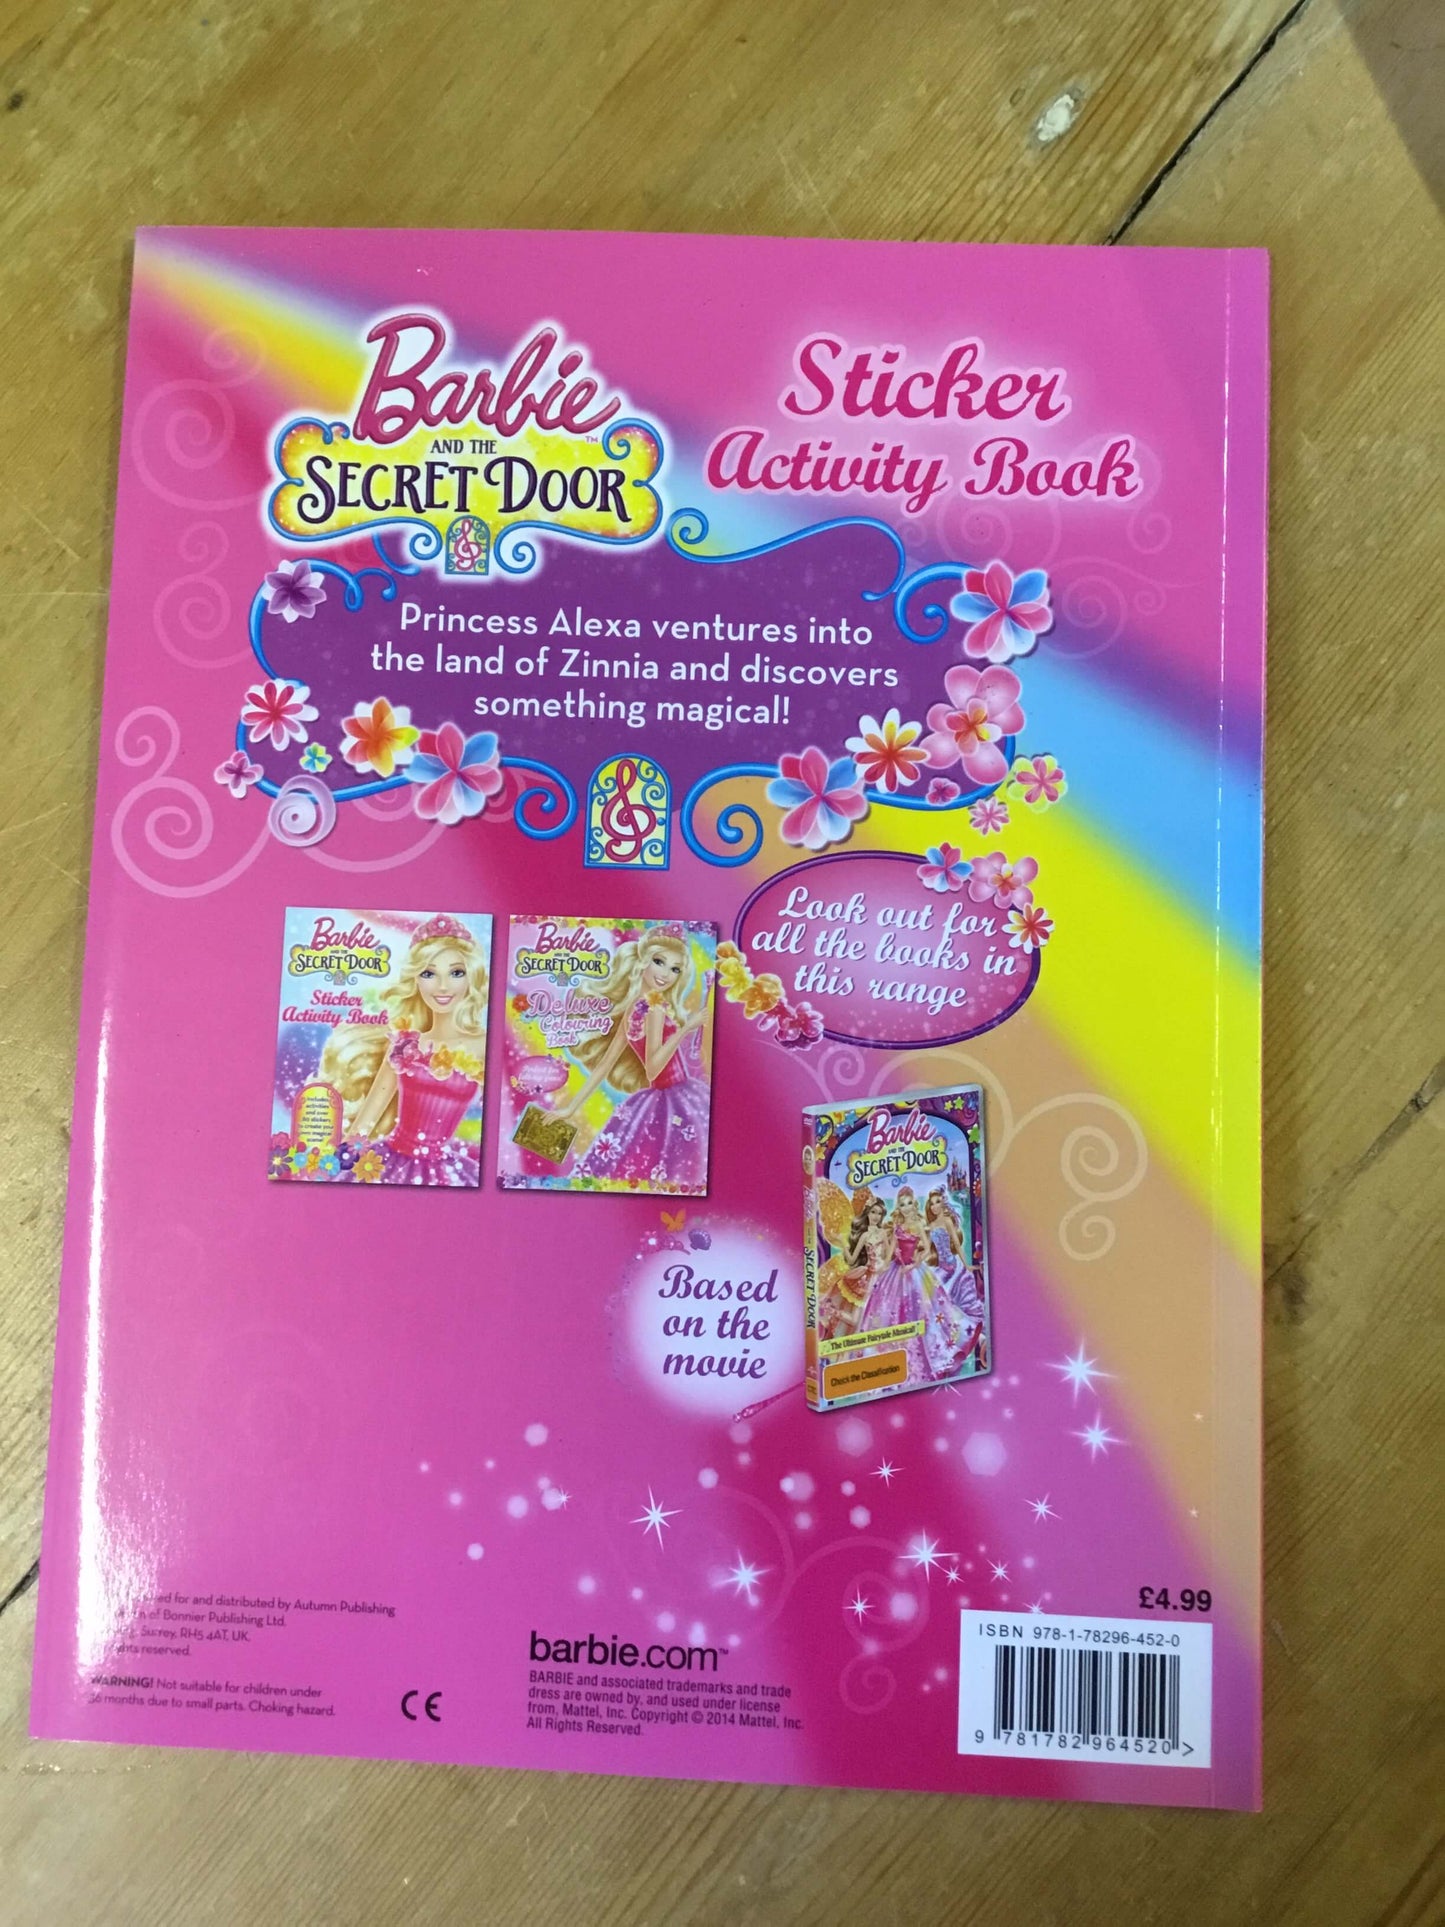 Barbie and the Secret Door - Sticker Activity Book